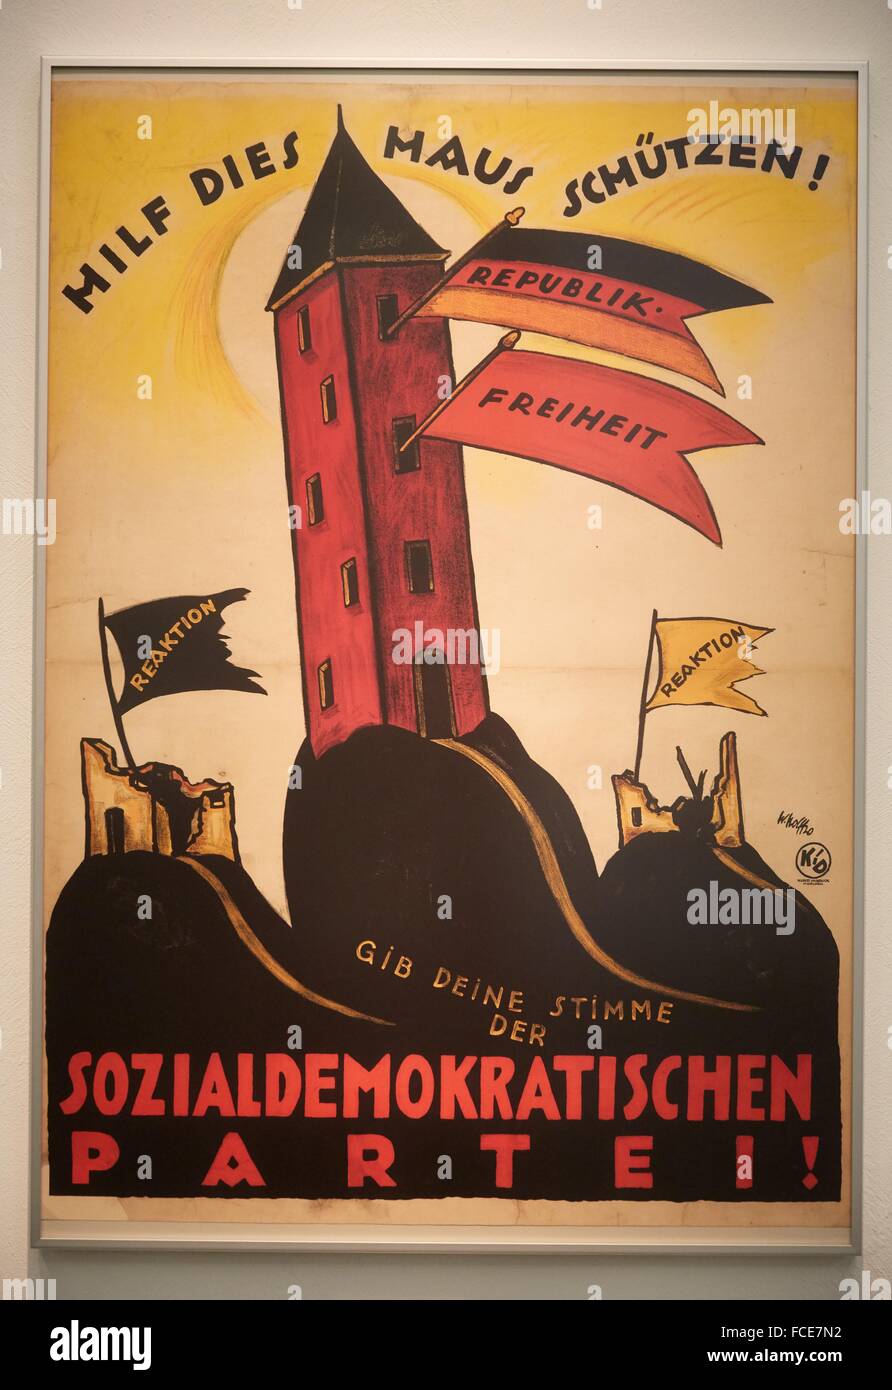 Affiche pour le SPD 1920 élections parlementaires, 1920, Deutsches Historisches Museum, Berlin, Allemagne Banque D'Images